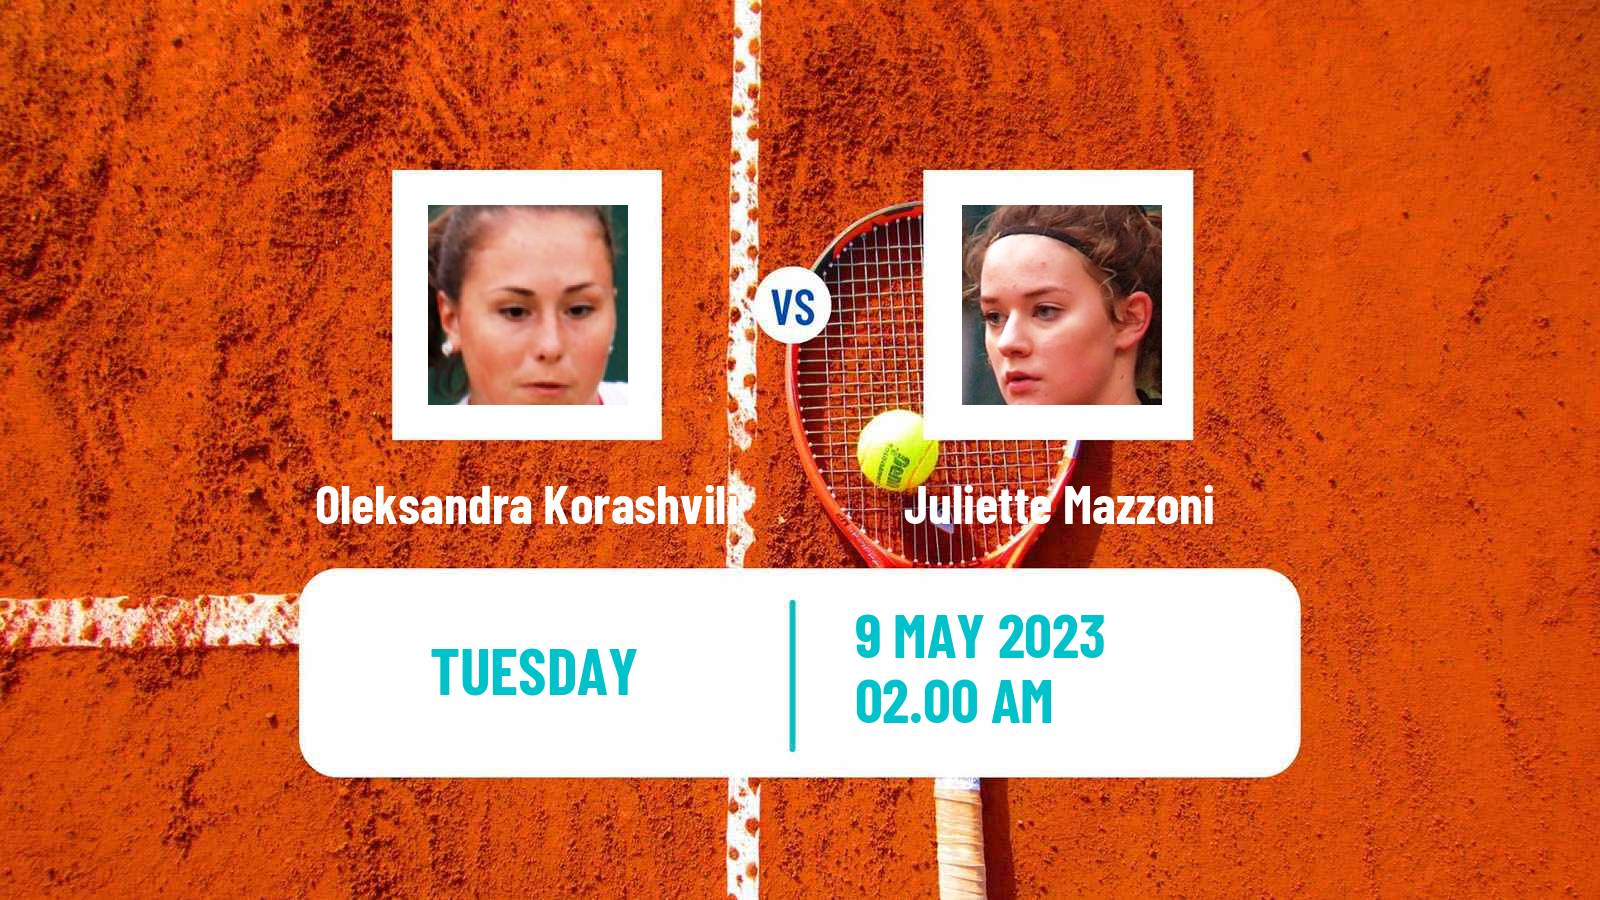 Tennis ITF Tournaments Oleksandra Korashvili - Juliette Mazzoni